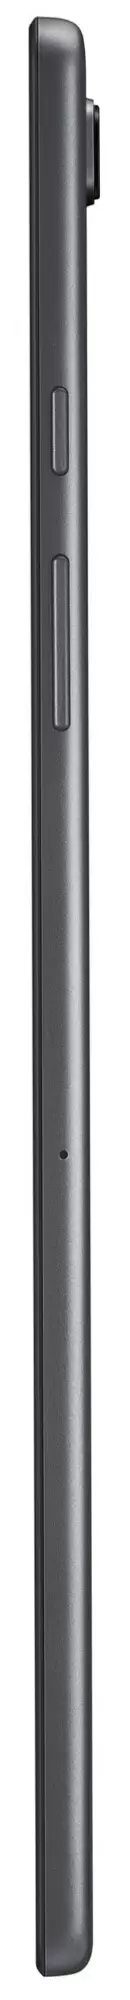 Планшет Samsung Galaxy Tab A7 10.4 WiFi, темно-серый